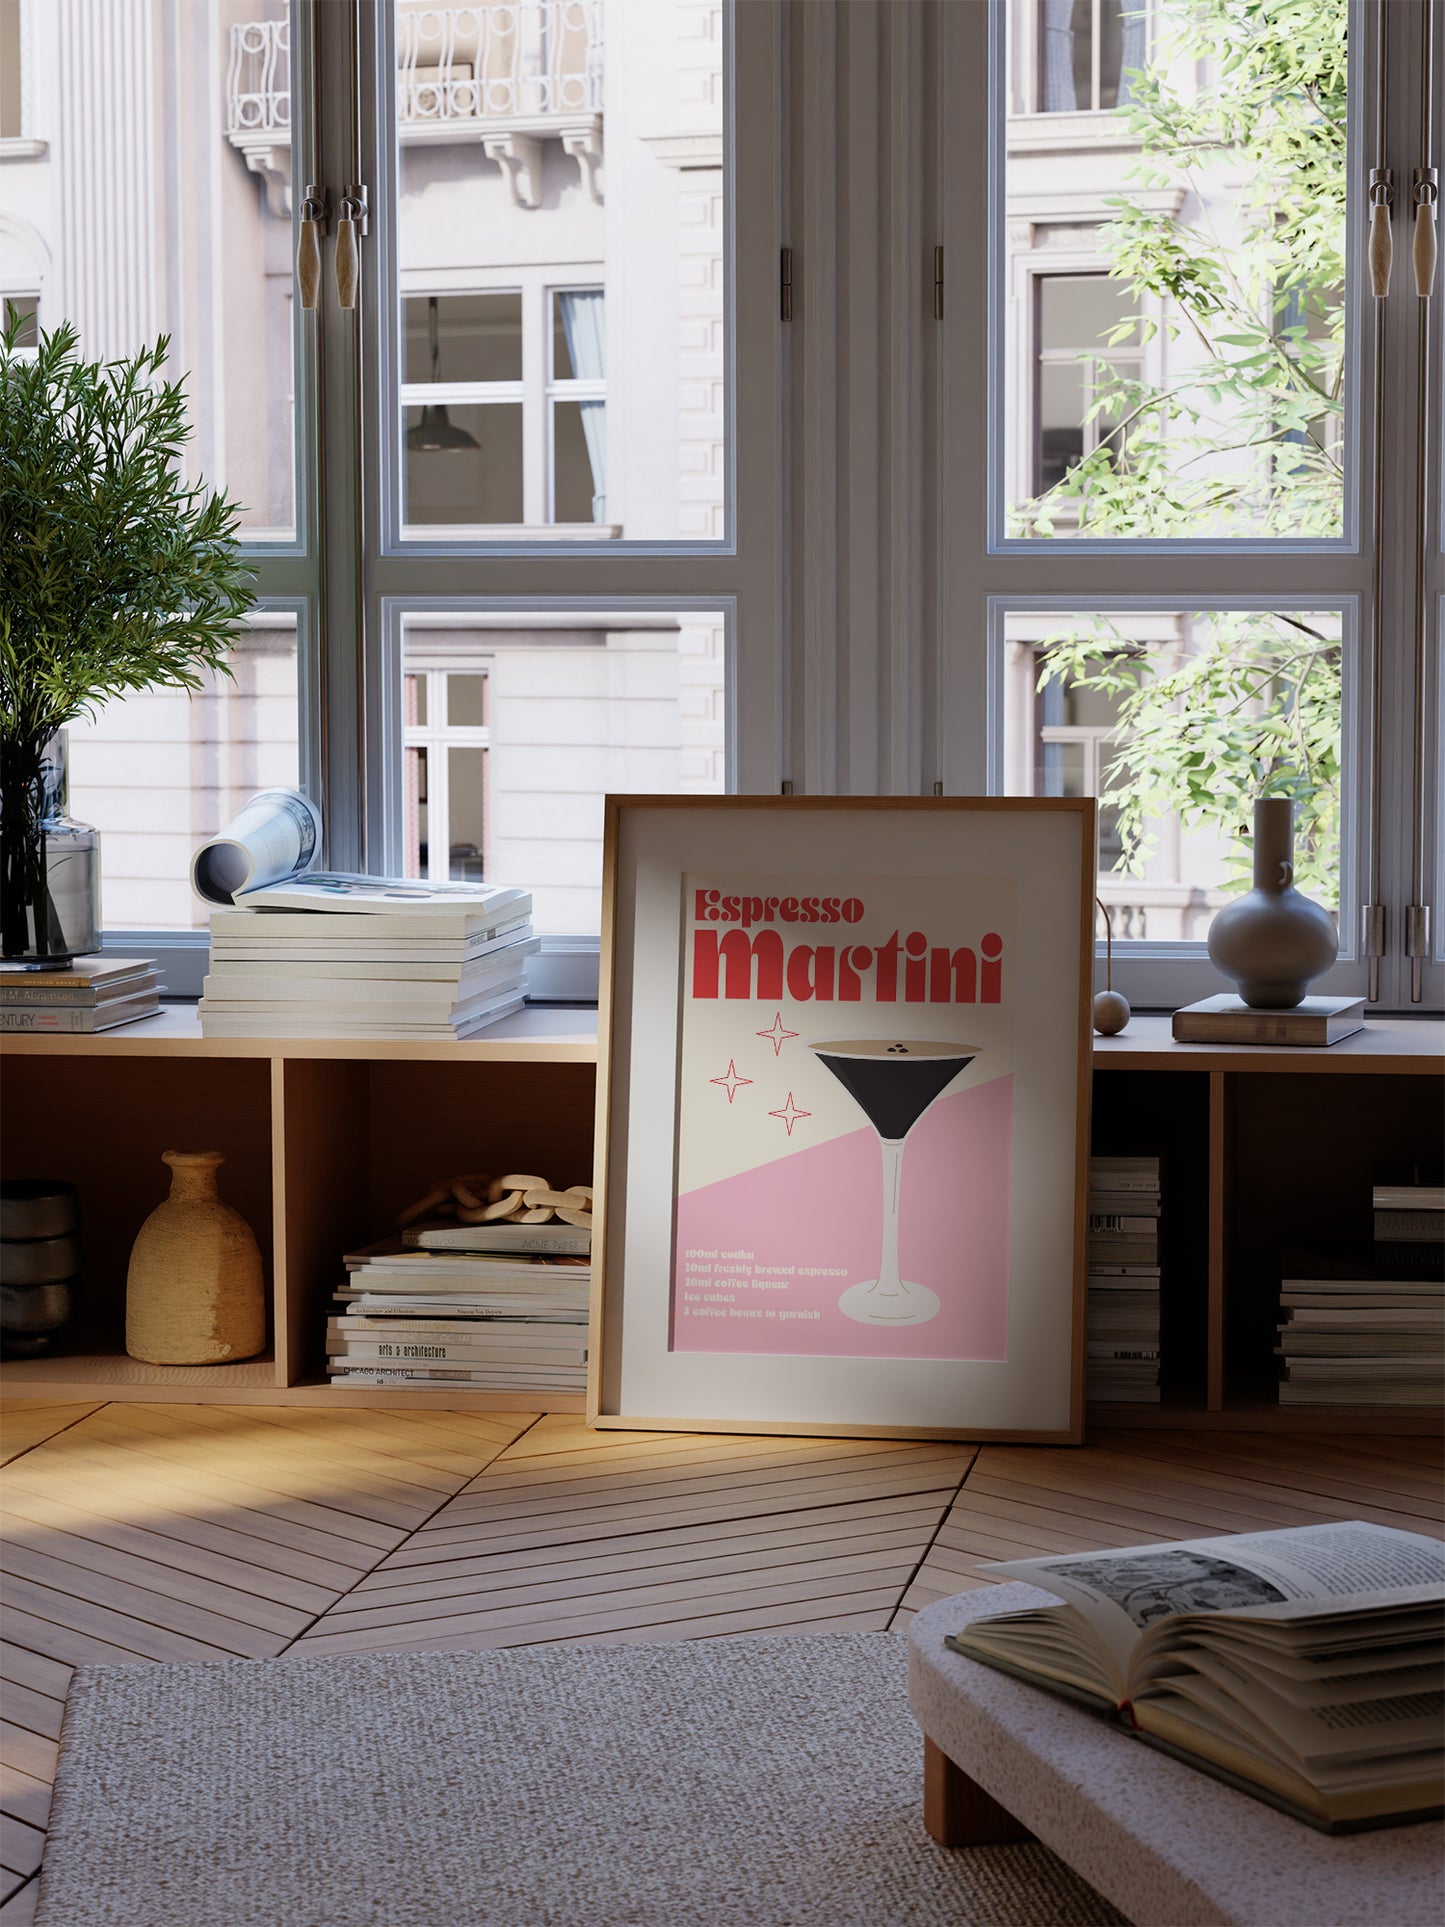 Pastel Espresso Martini Poster